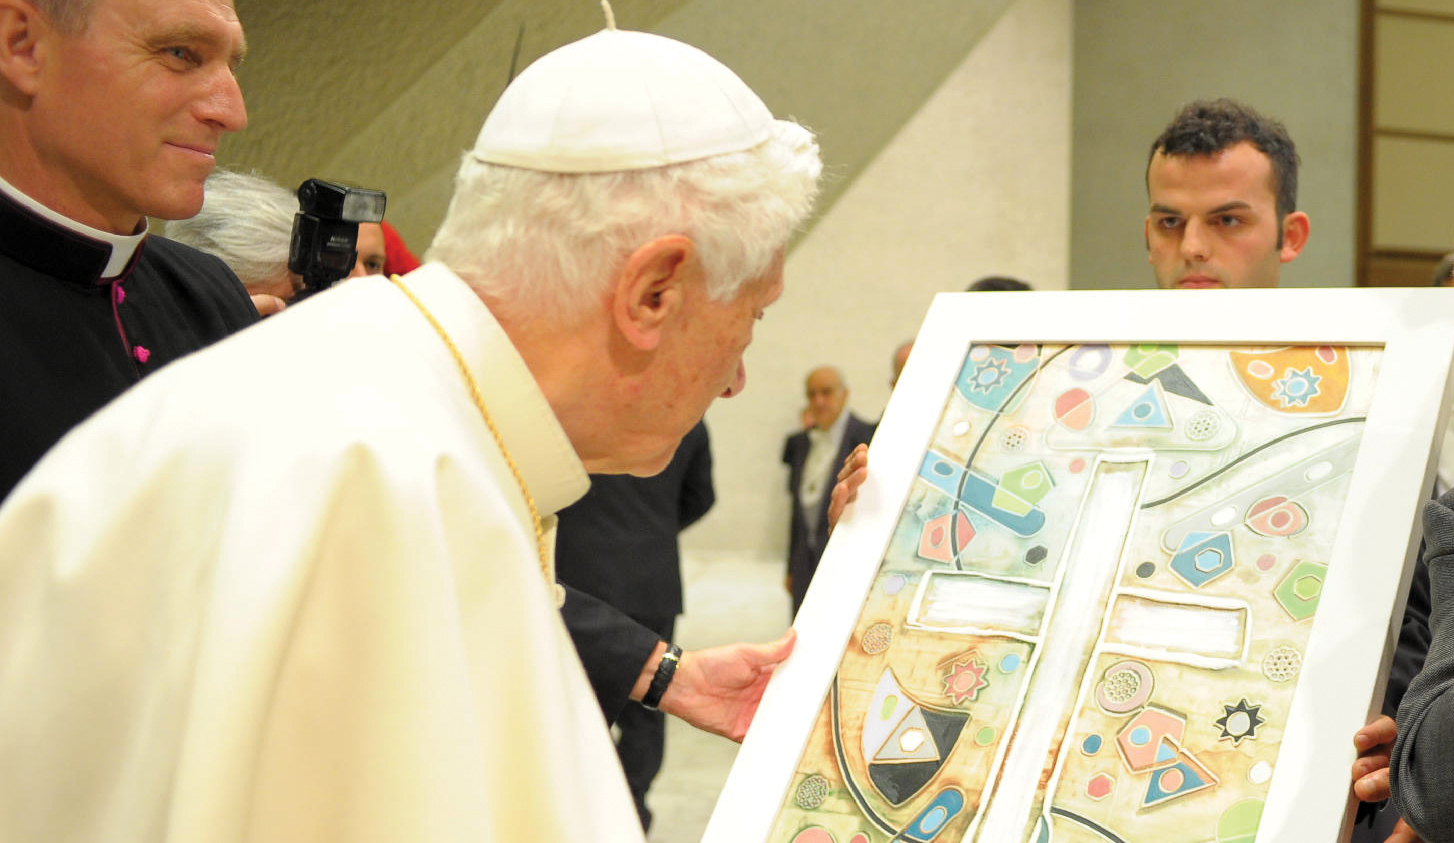 eventi mostre acquisizioni collezioni Entra nelle collezioni Vaticane